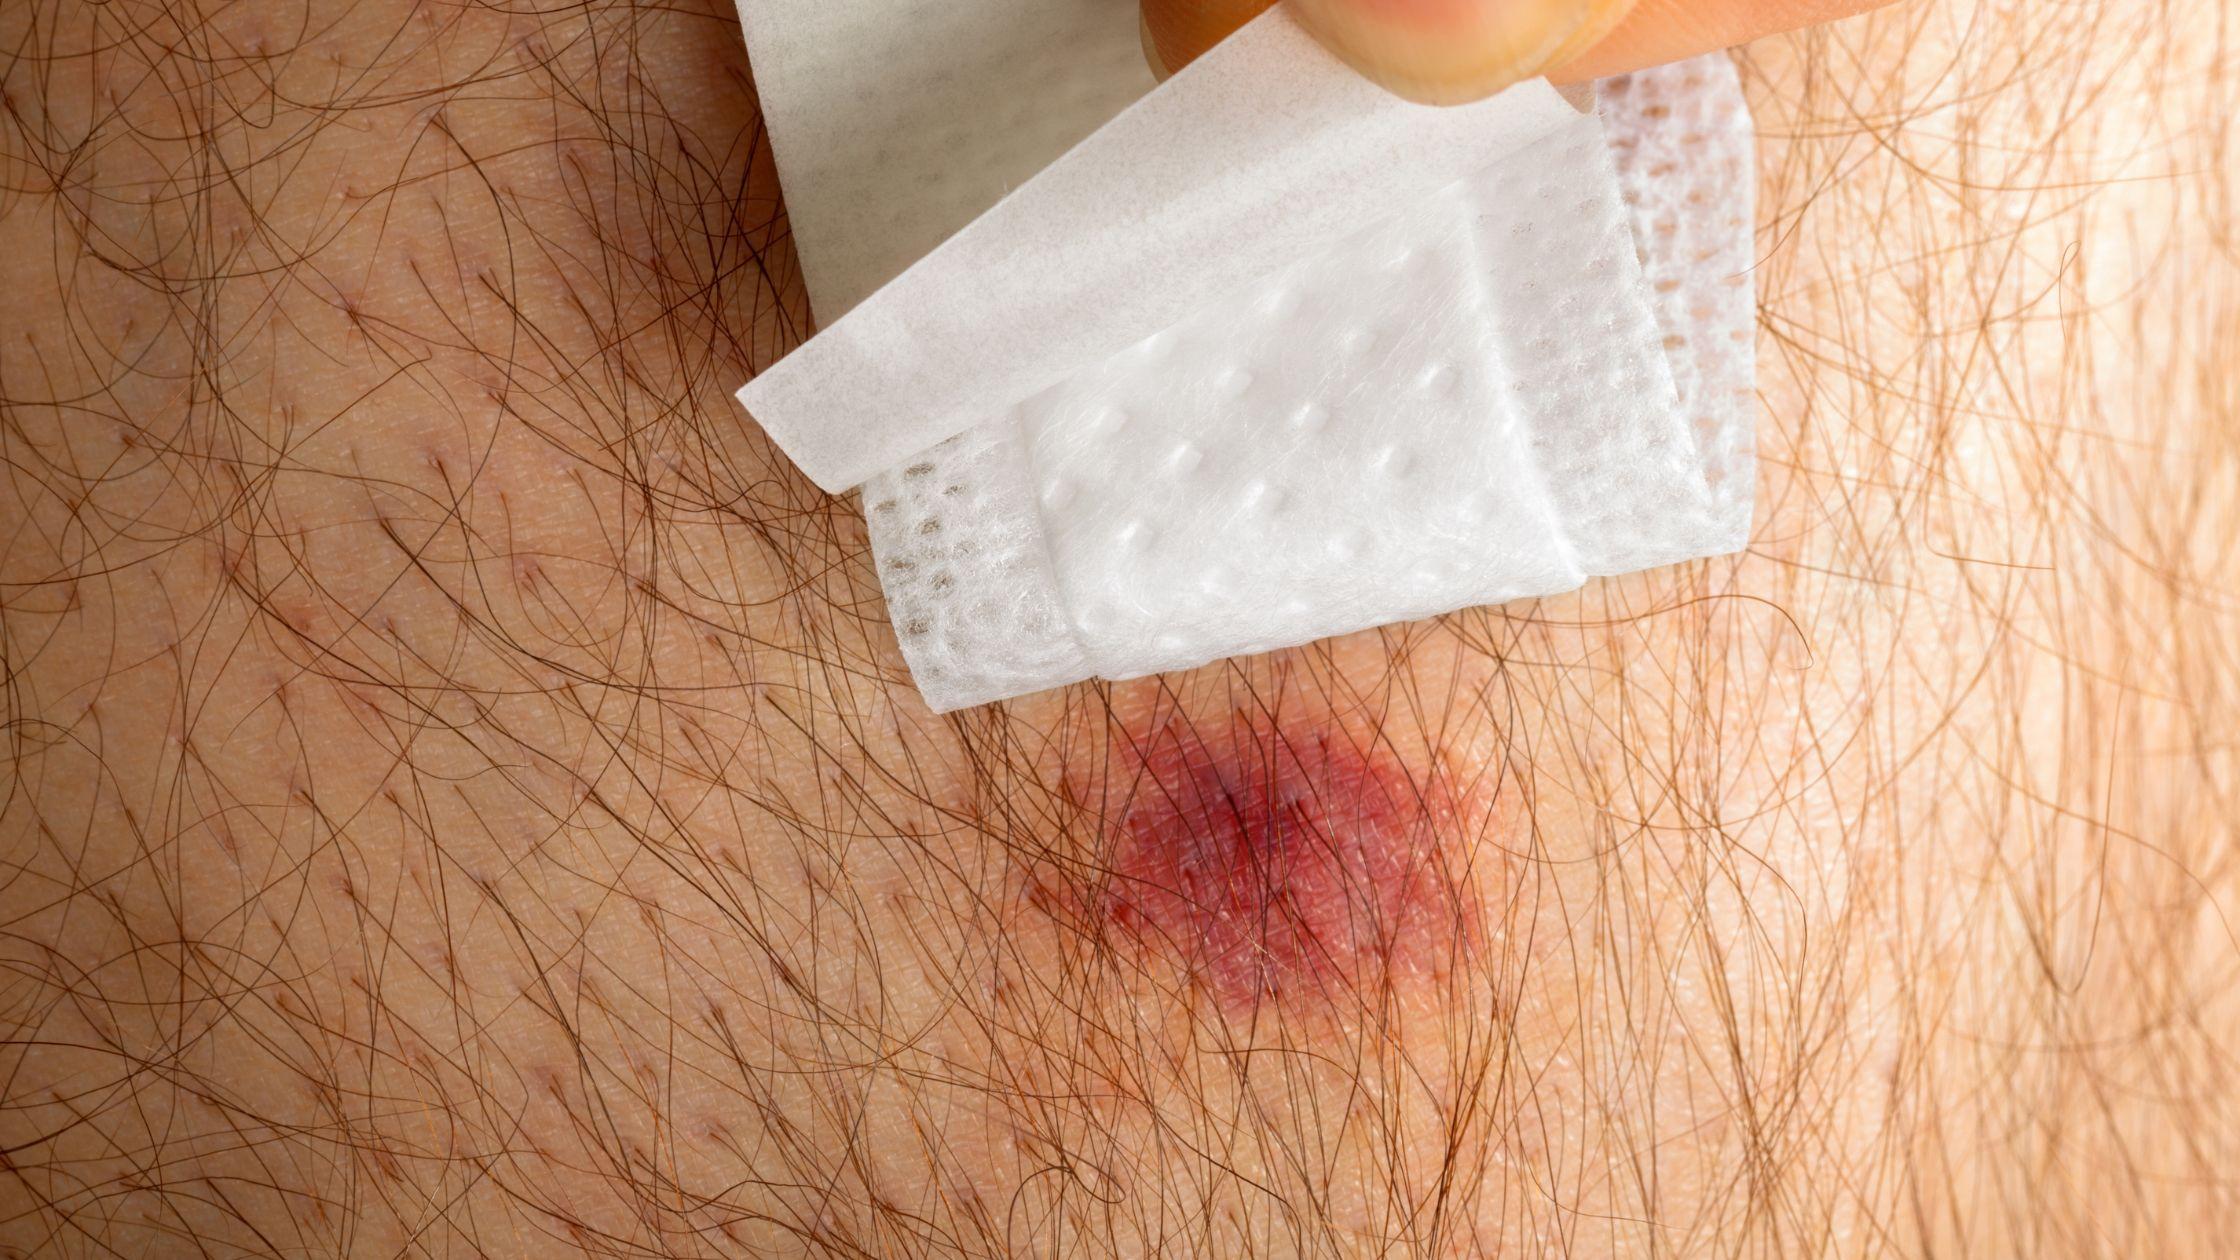 A spider bite on skin being shown under bandage 